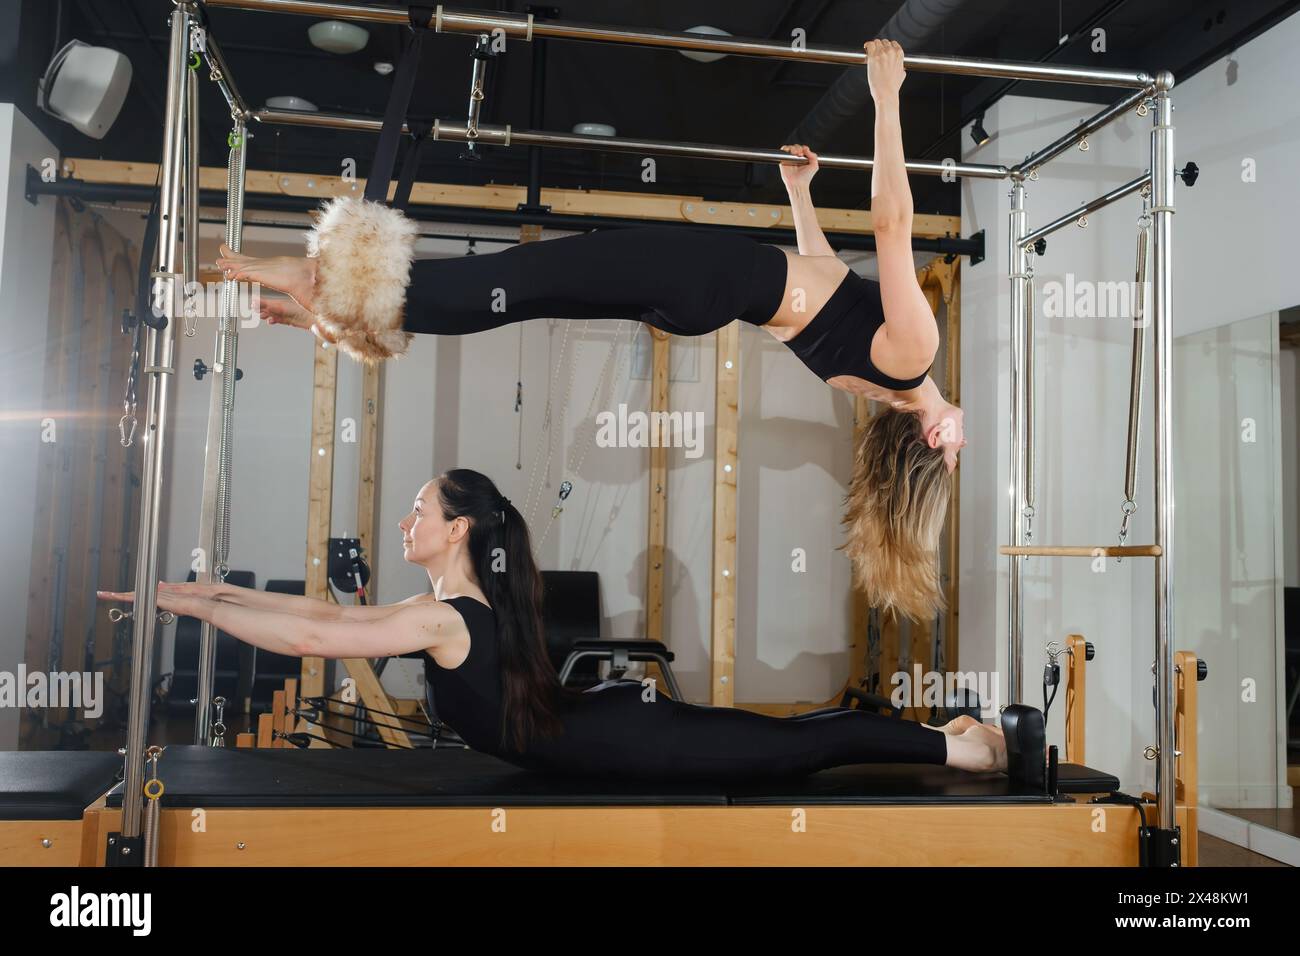 Due donne praticano esercizi di fitness fisico su una macchina Pilates in una stanza con pavimento in legno duro. I loro movimenti mostrano una bella balanc Foto Stock